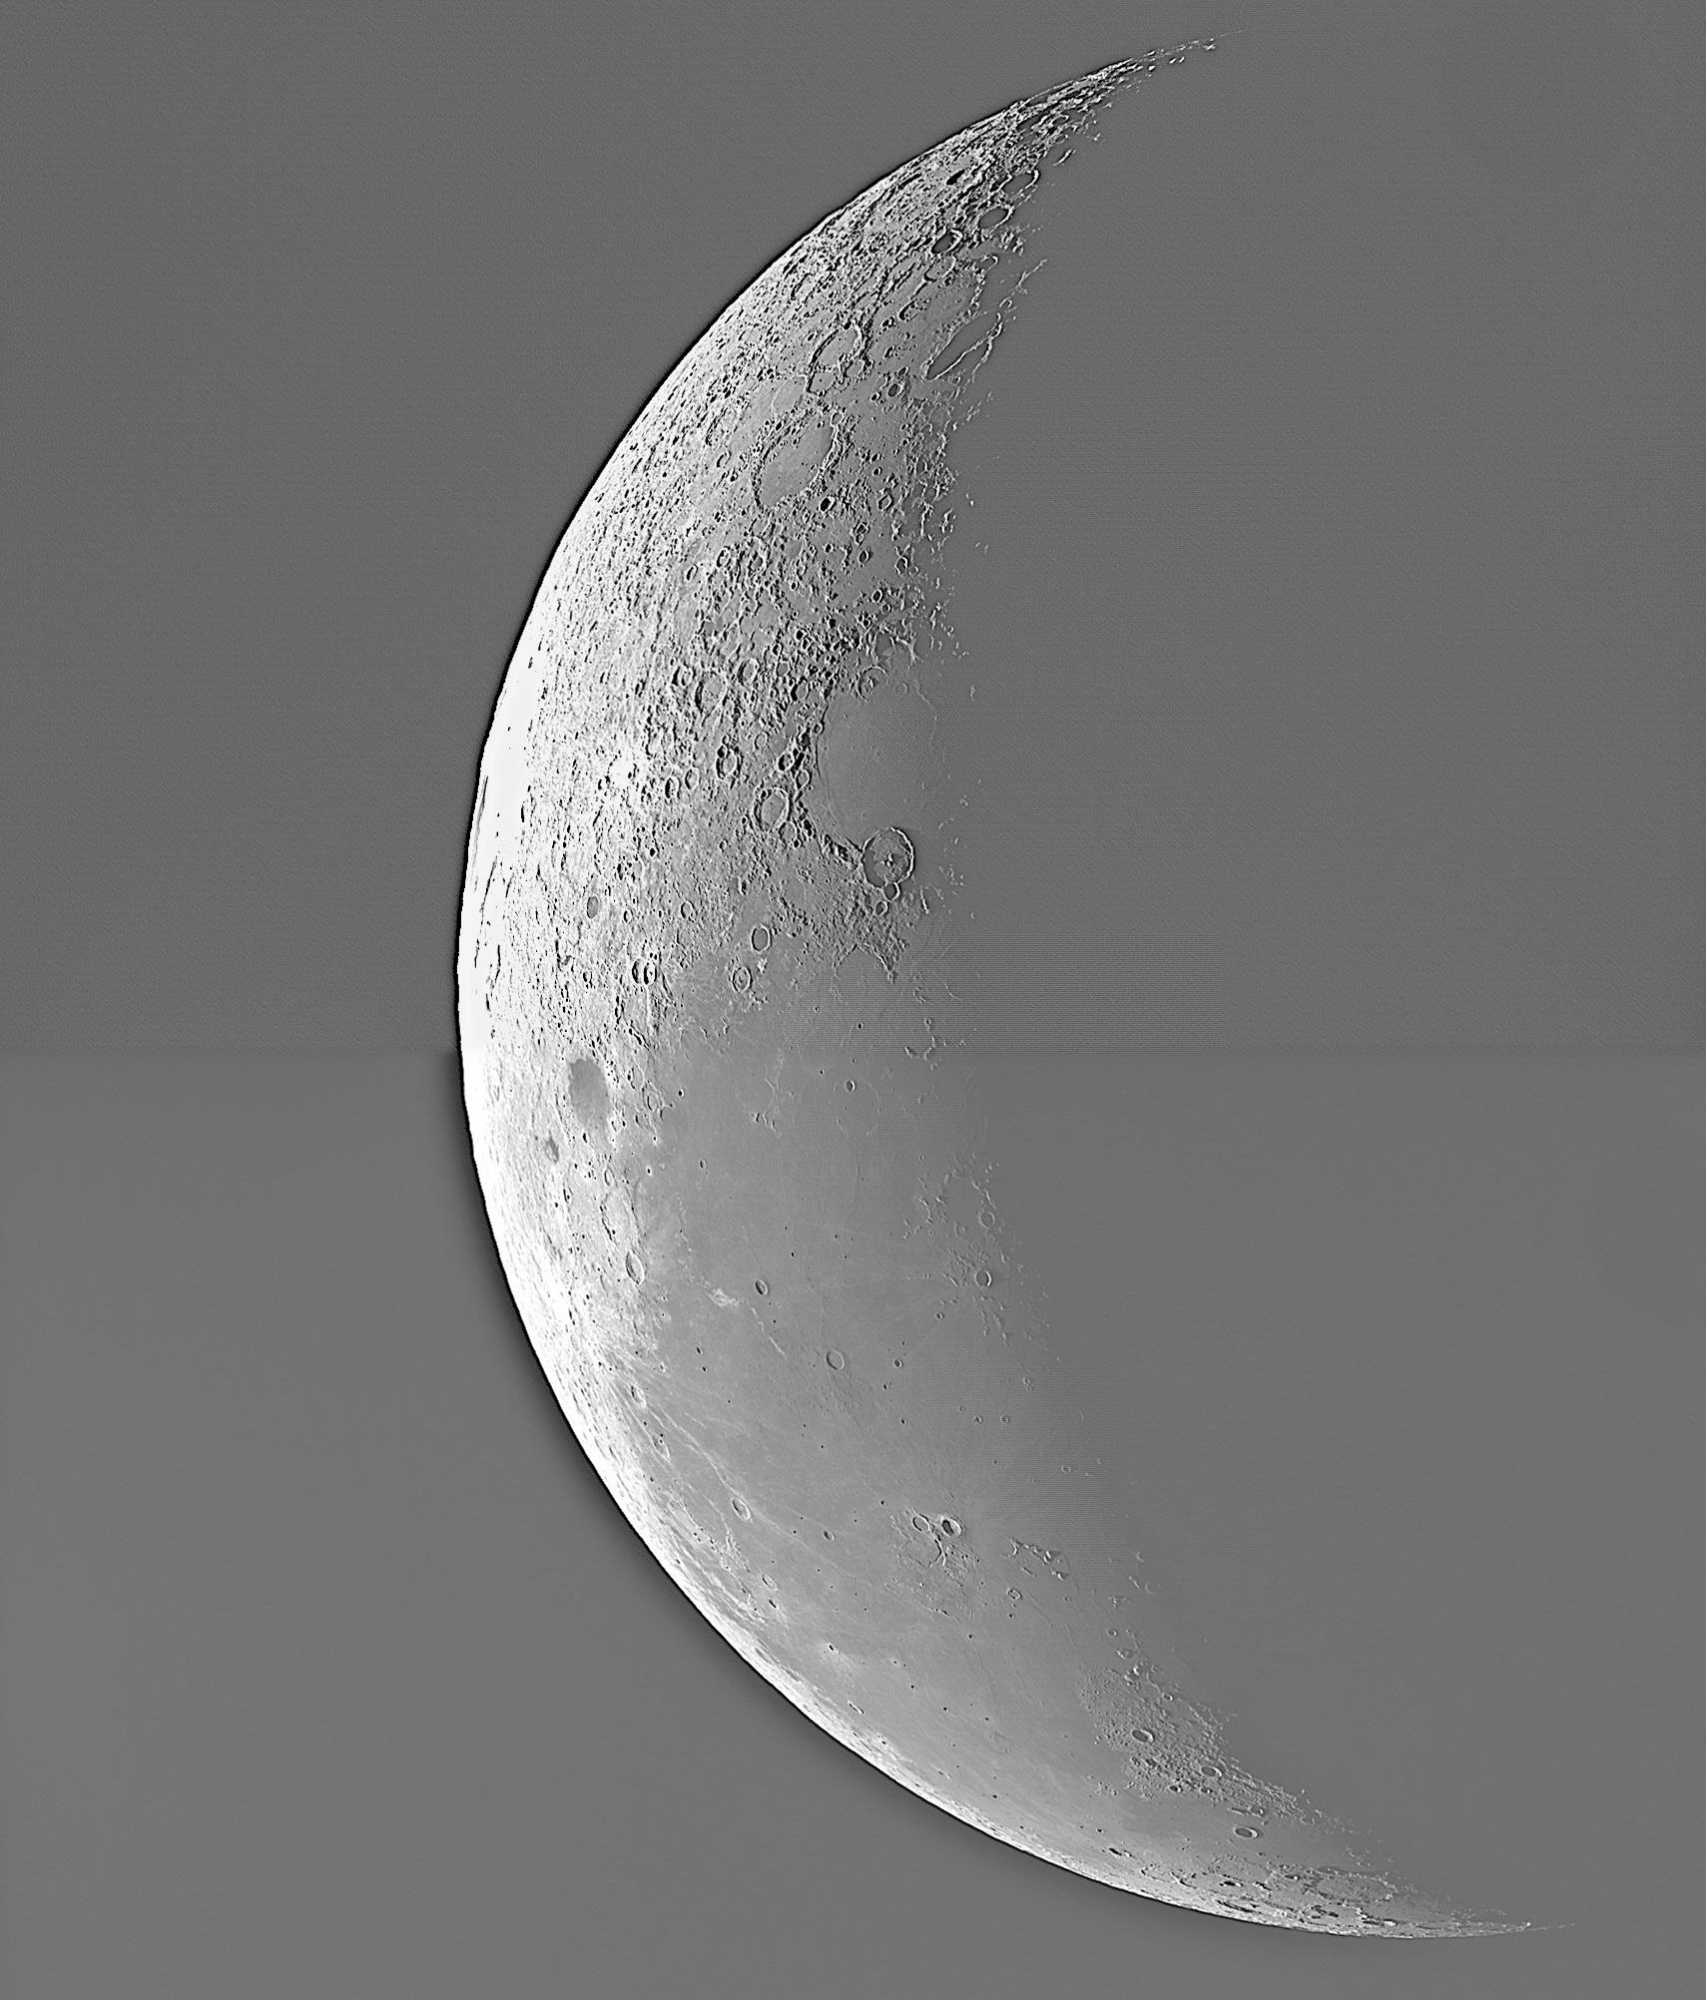 2020-10-12-Full Moon.jpg